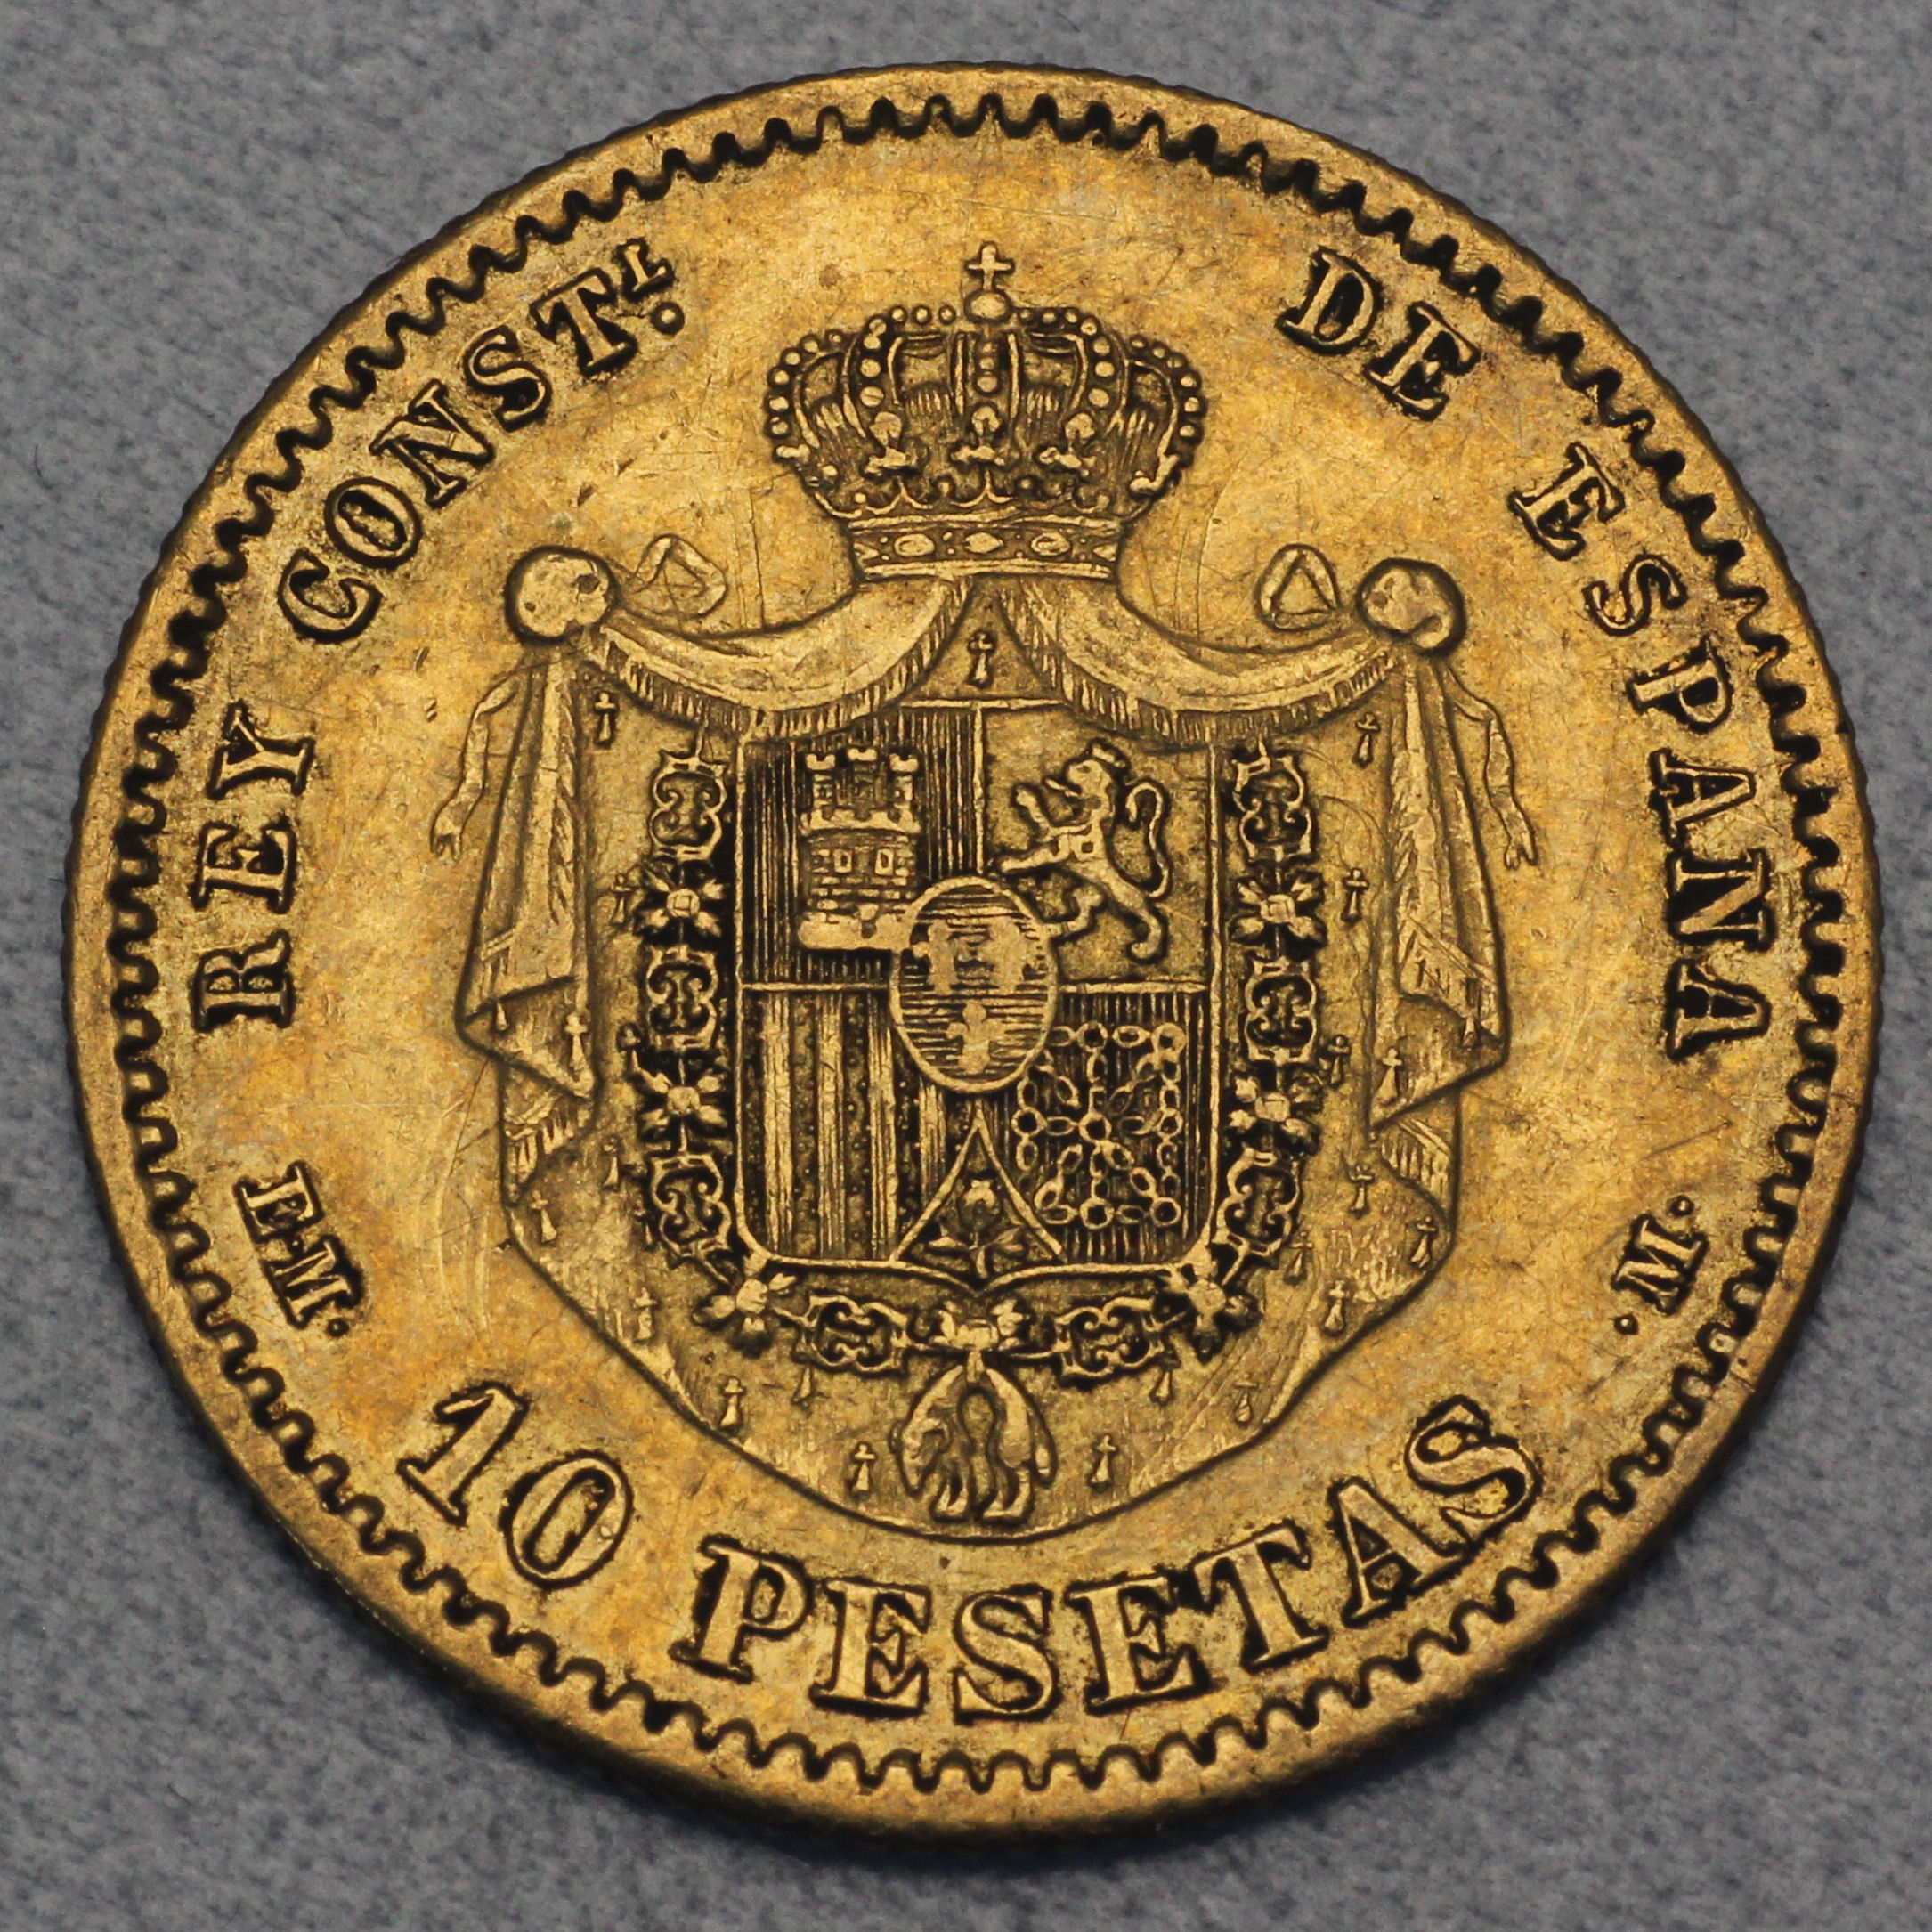 Perfekte Wahl Für Ihre Spardose Münze Inhaber Und Münzenalbum Hobby of Kings 10 Espana Spanien Münzen Peseten Peseta Céntimos Pre-Euro-münzen 1939-2001 